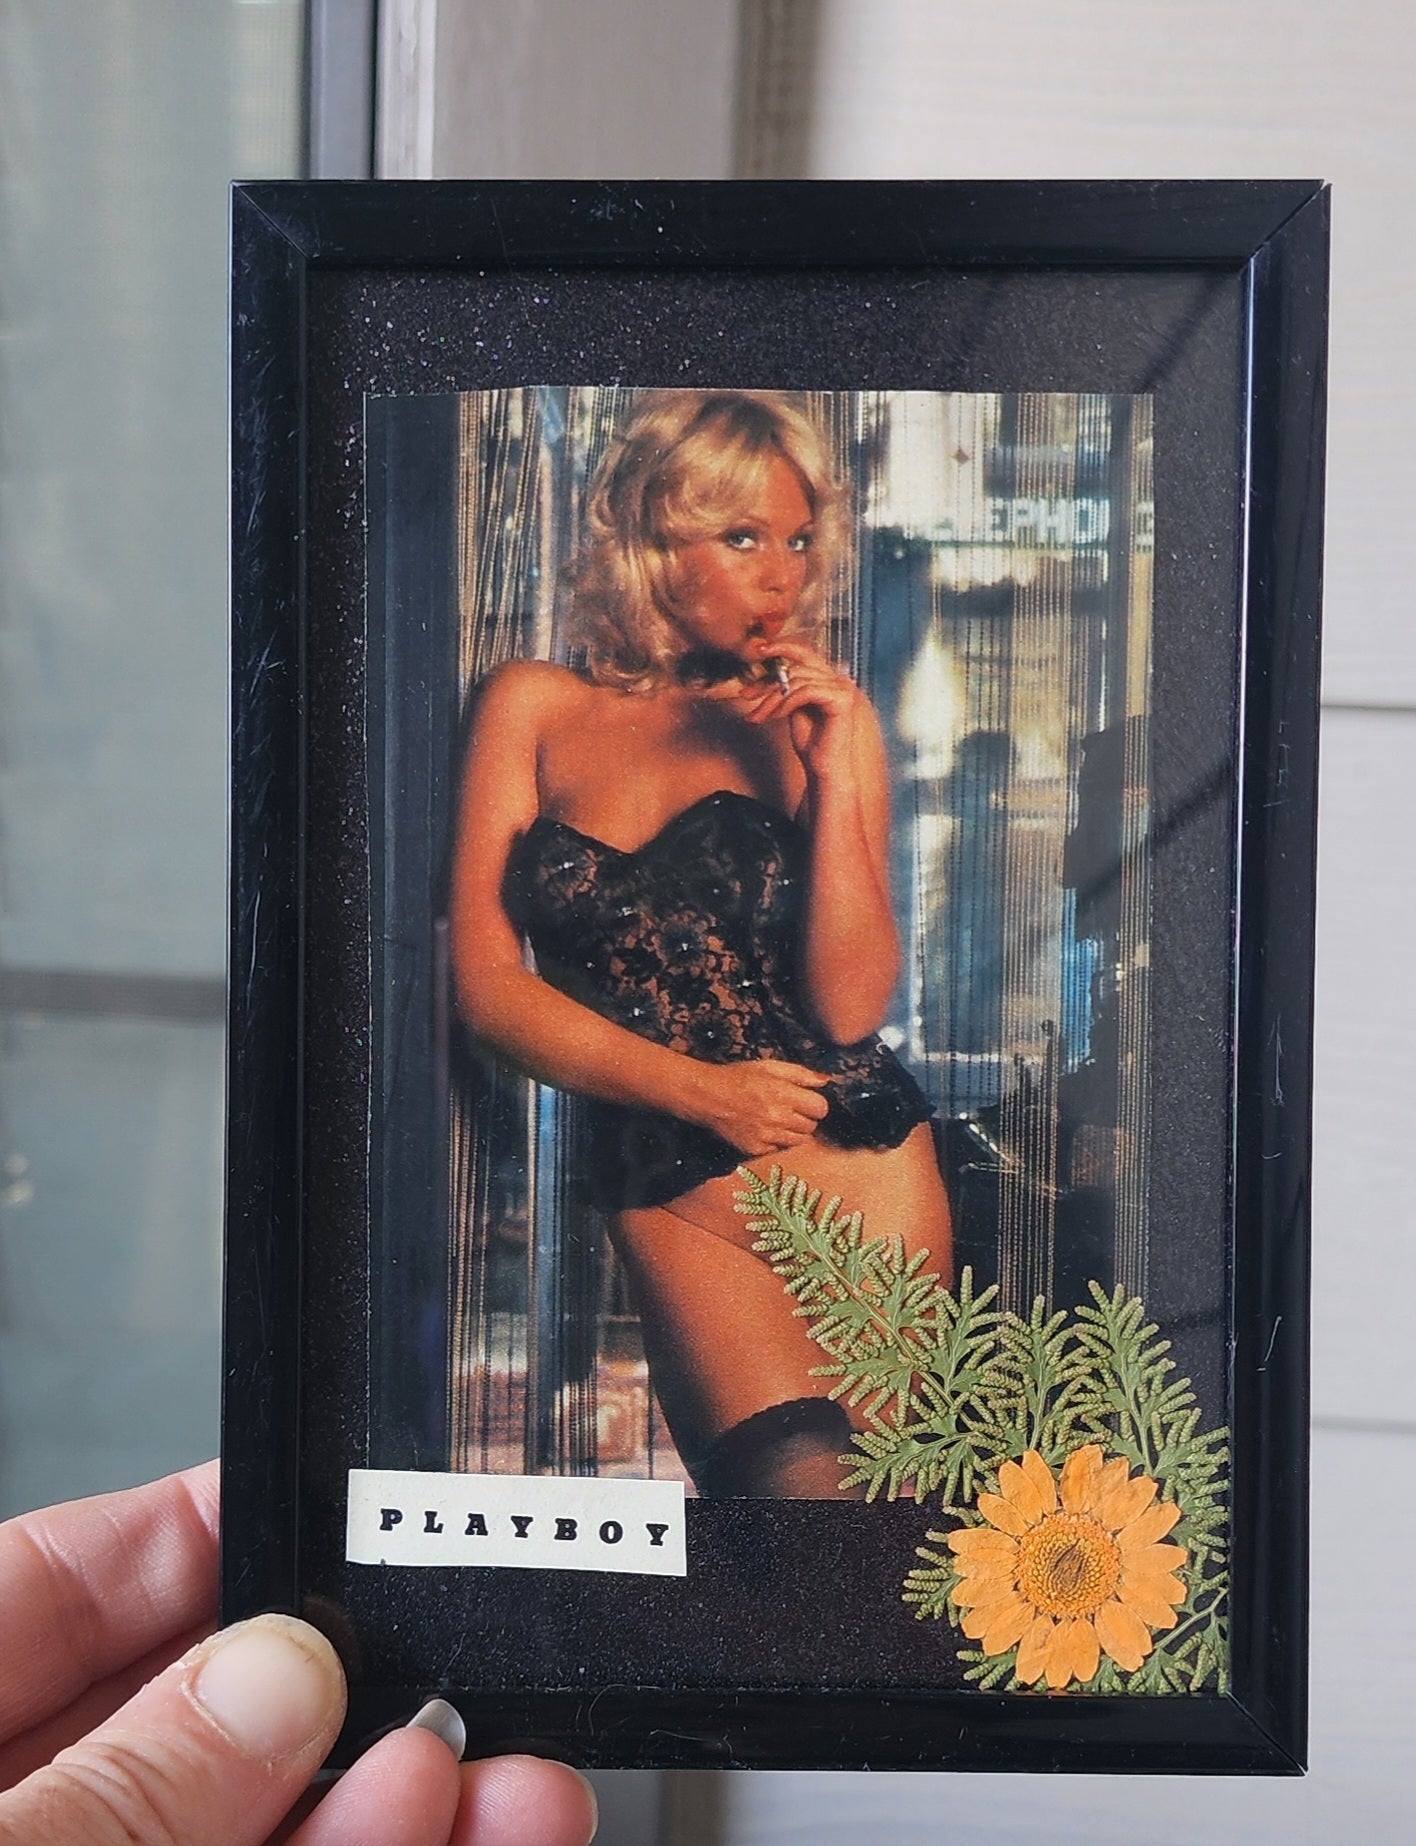 Framed Vintage Playboy & Pressed Flower Art - 4 x 6